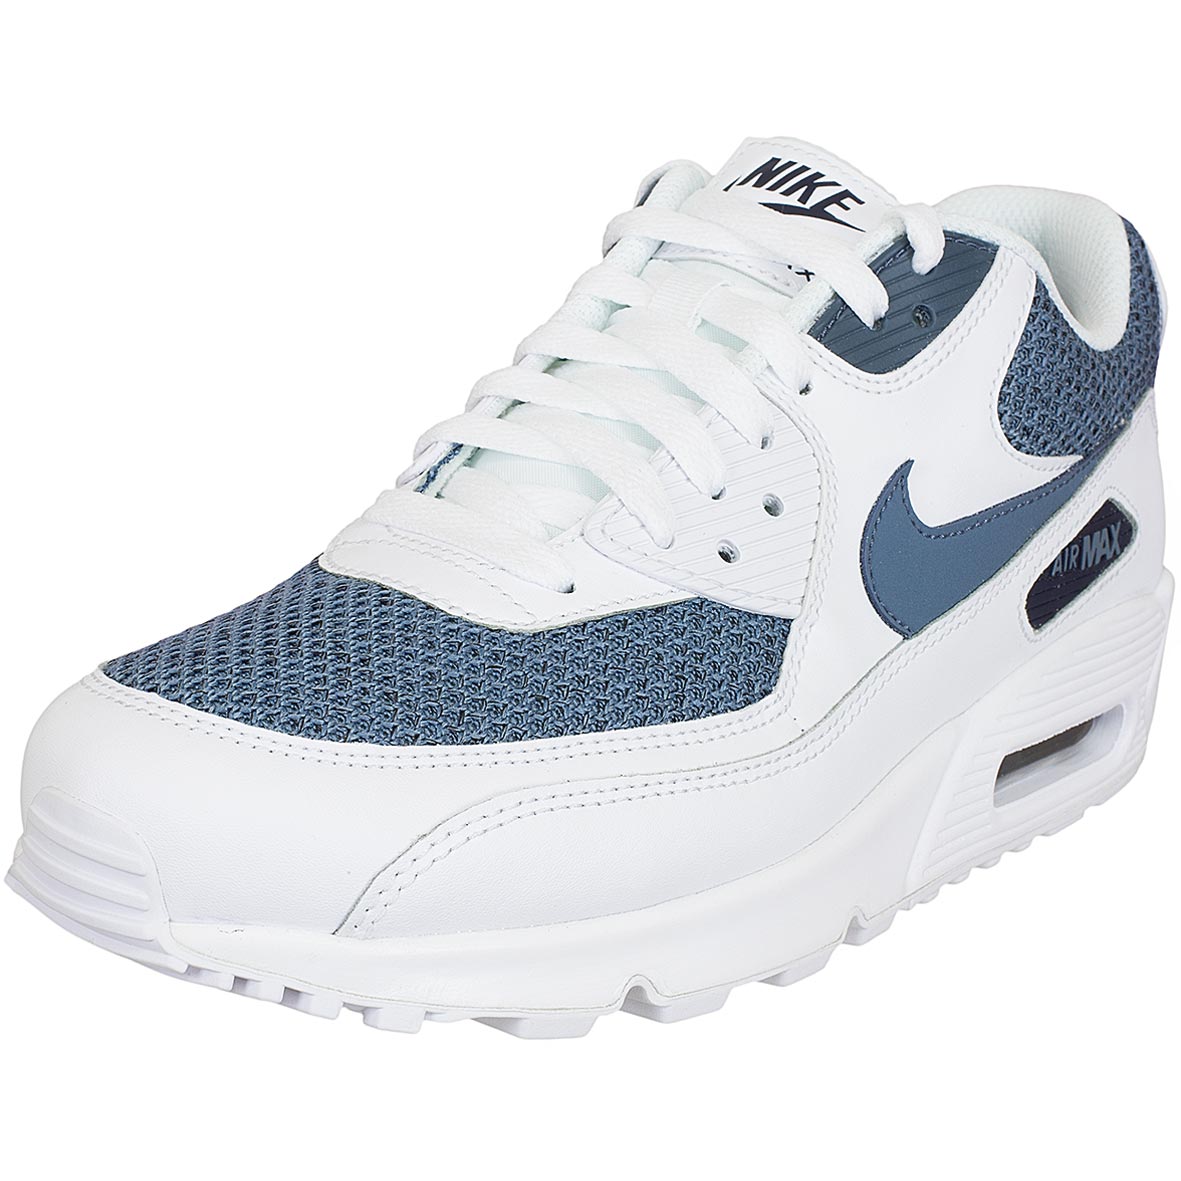 ☆ Nike Sneaker Air Max 90 Essential weiß/blau - hier bestellen!